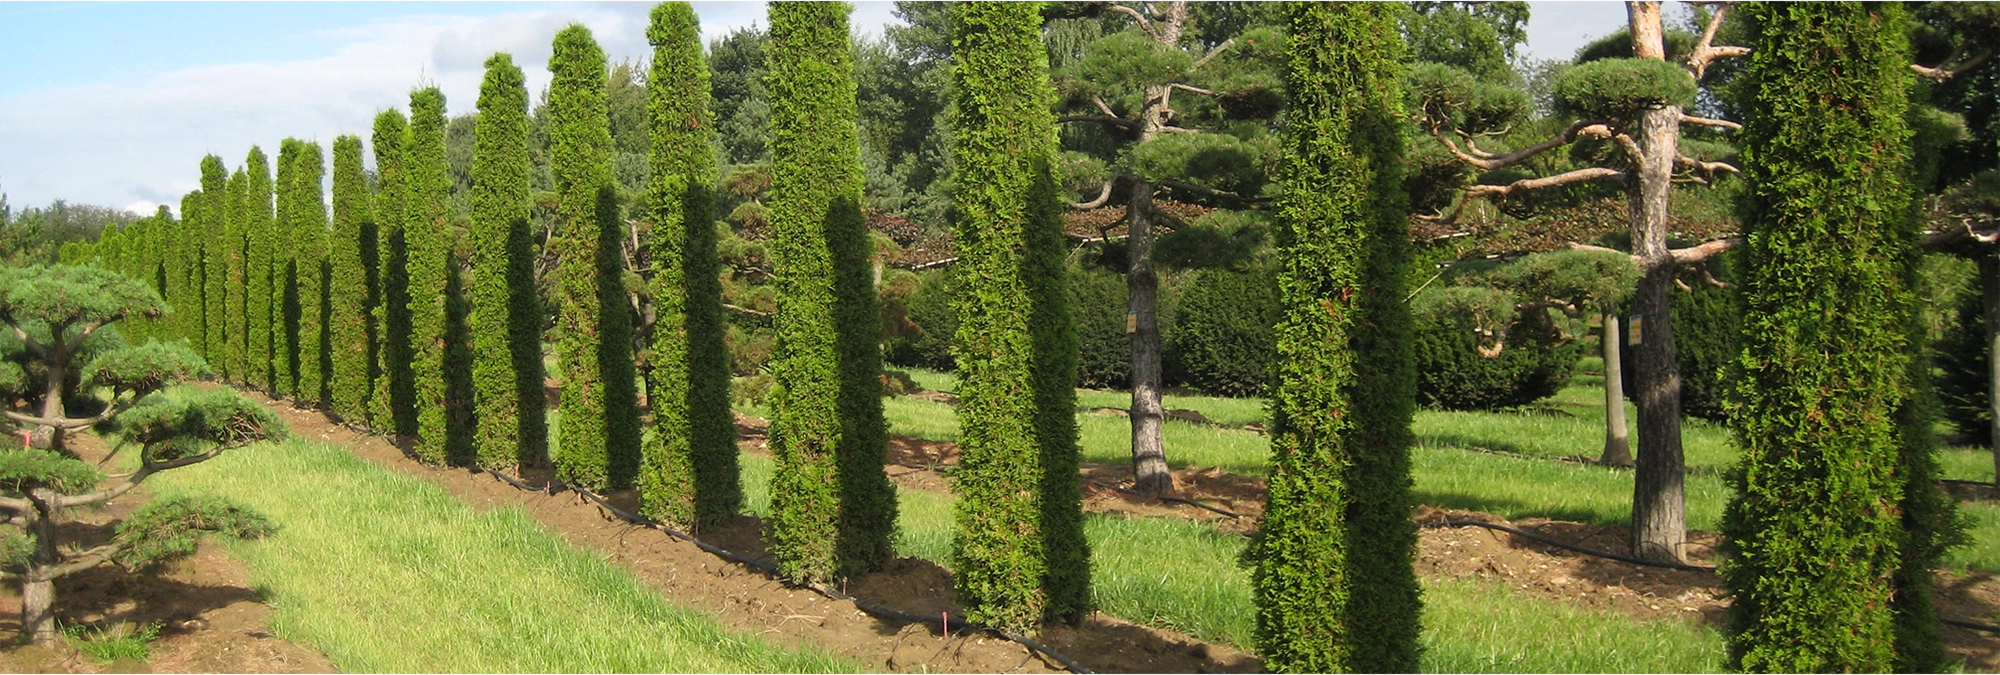 Säulenbäume als Thuja occidentalis Smaragd begeistern durch ihre Symmetrie und Eleganz